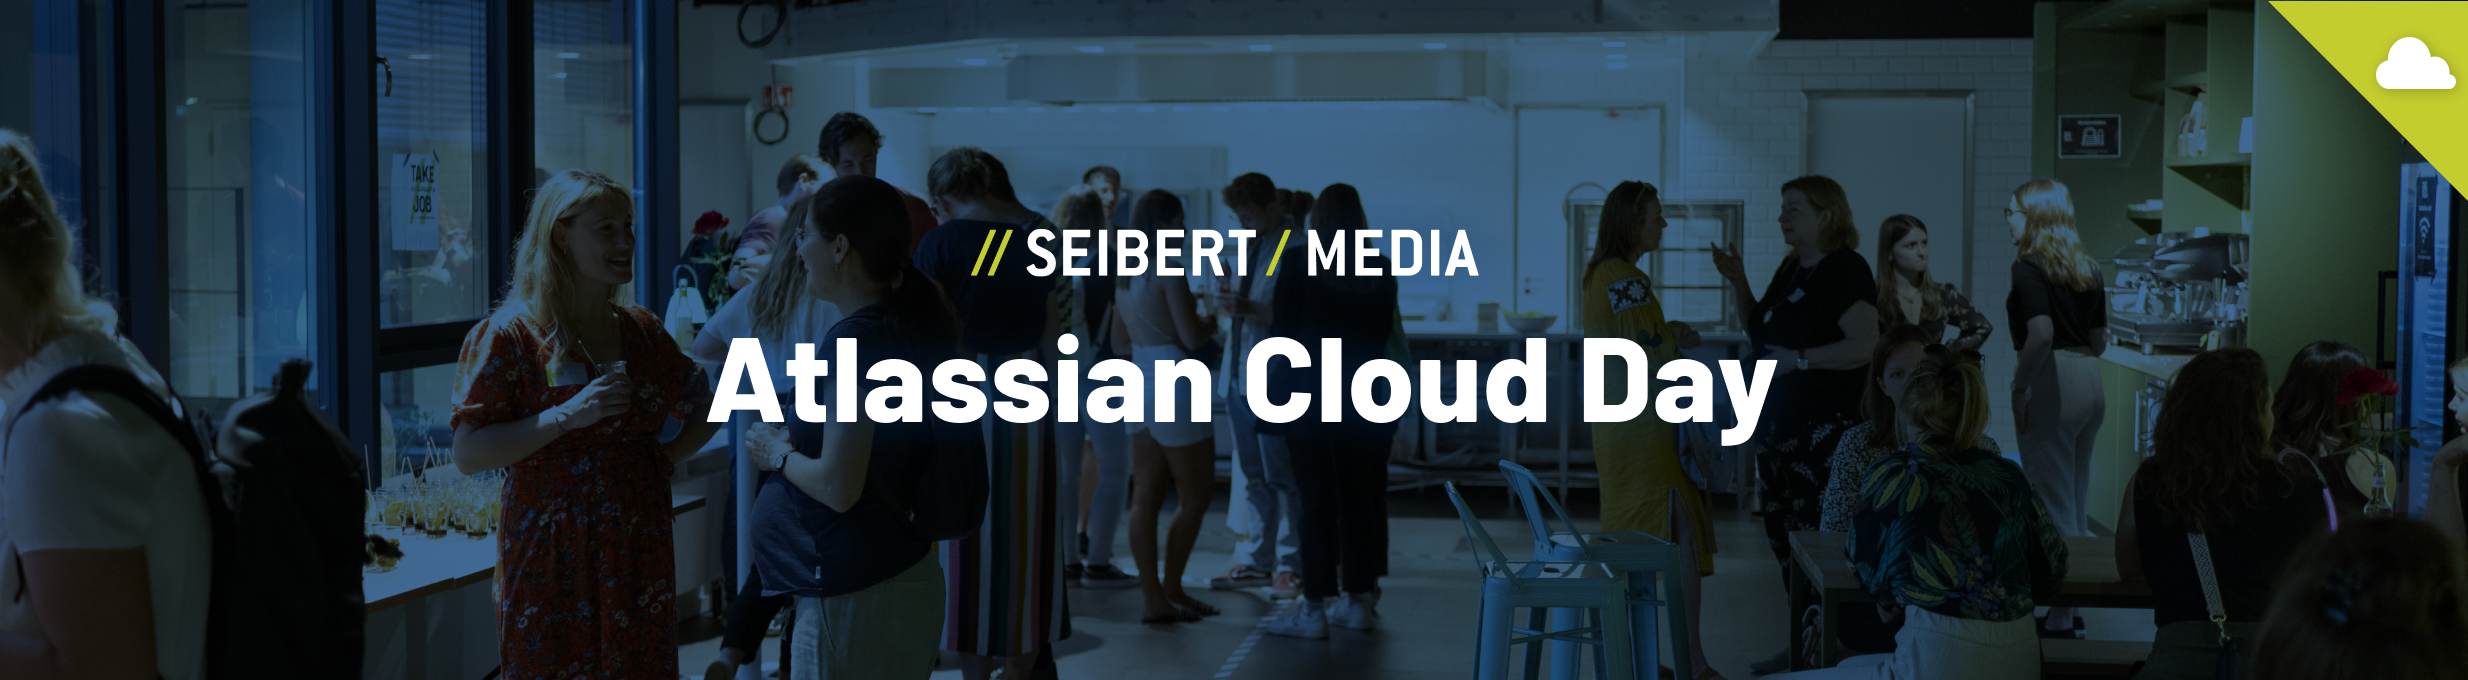 Wir schauen gemeinsam auf den 2. Atlassian Cloud Day zurück.